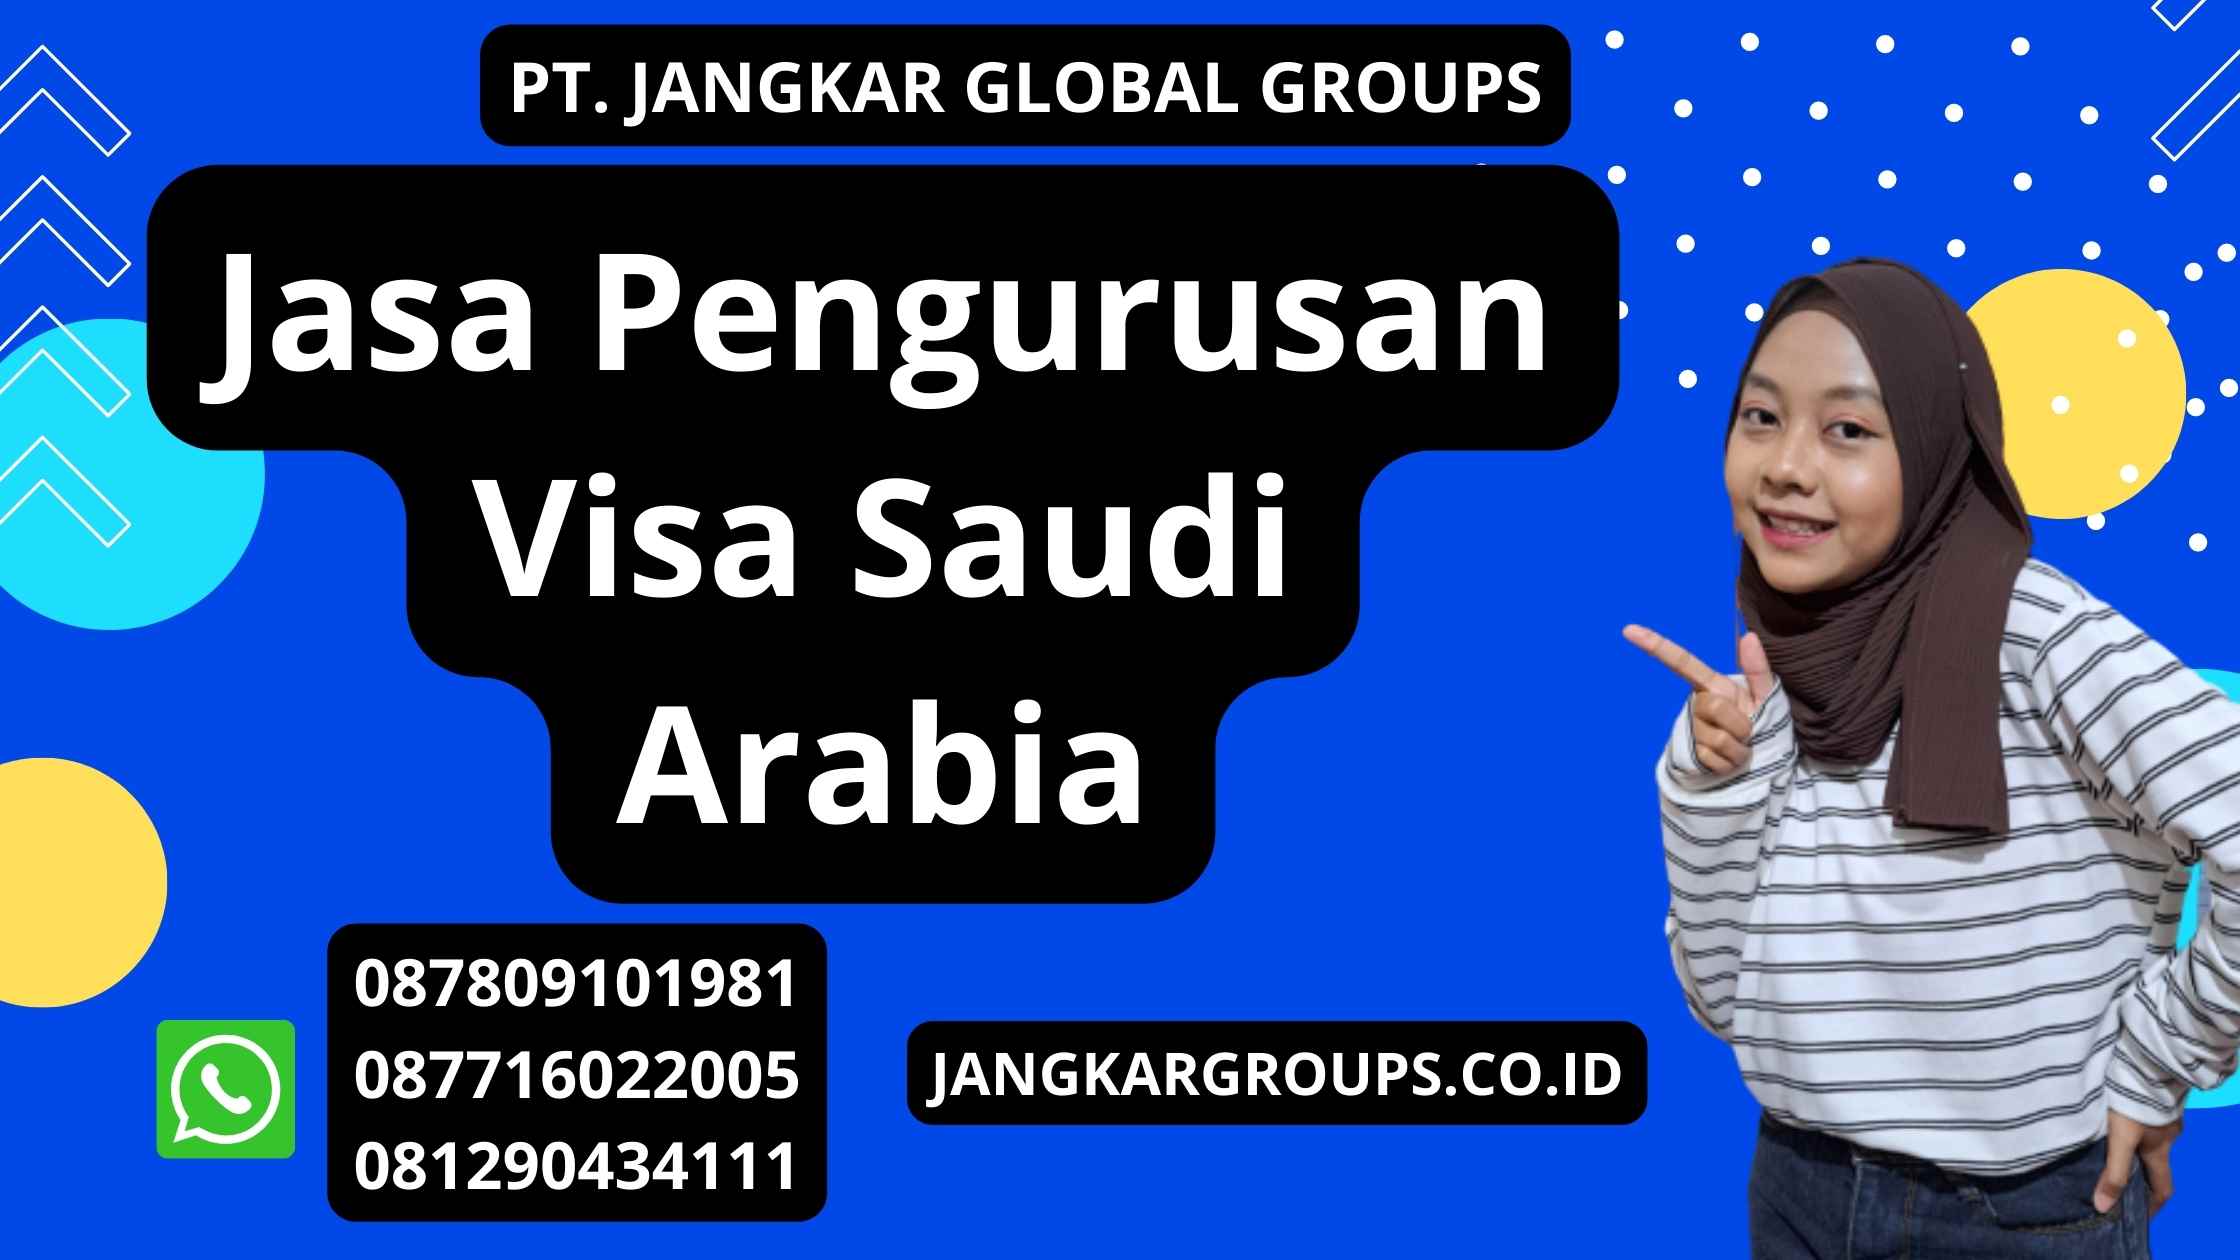 Jasa Pengurusan Visa Saudi Arabia